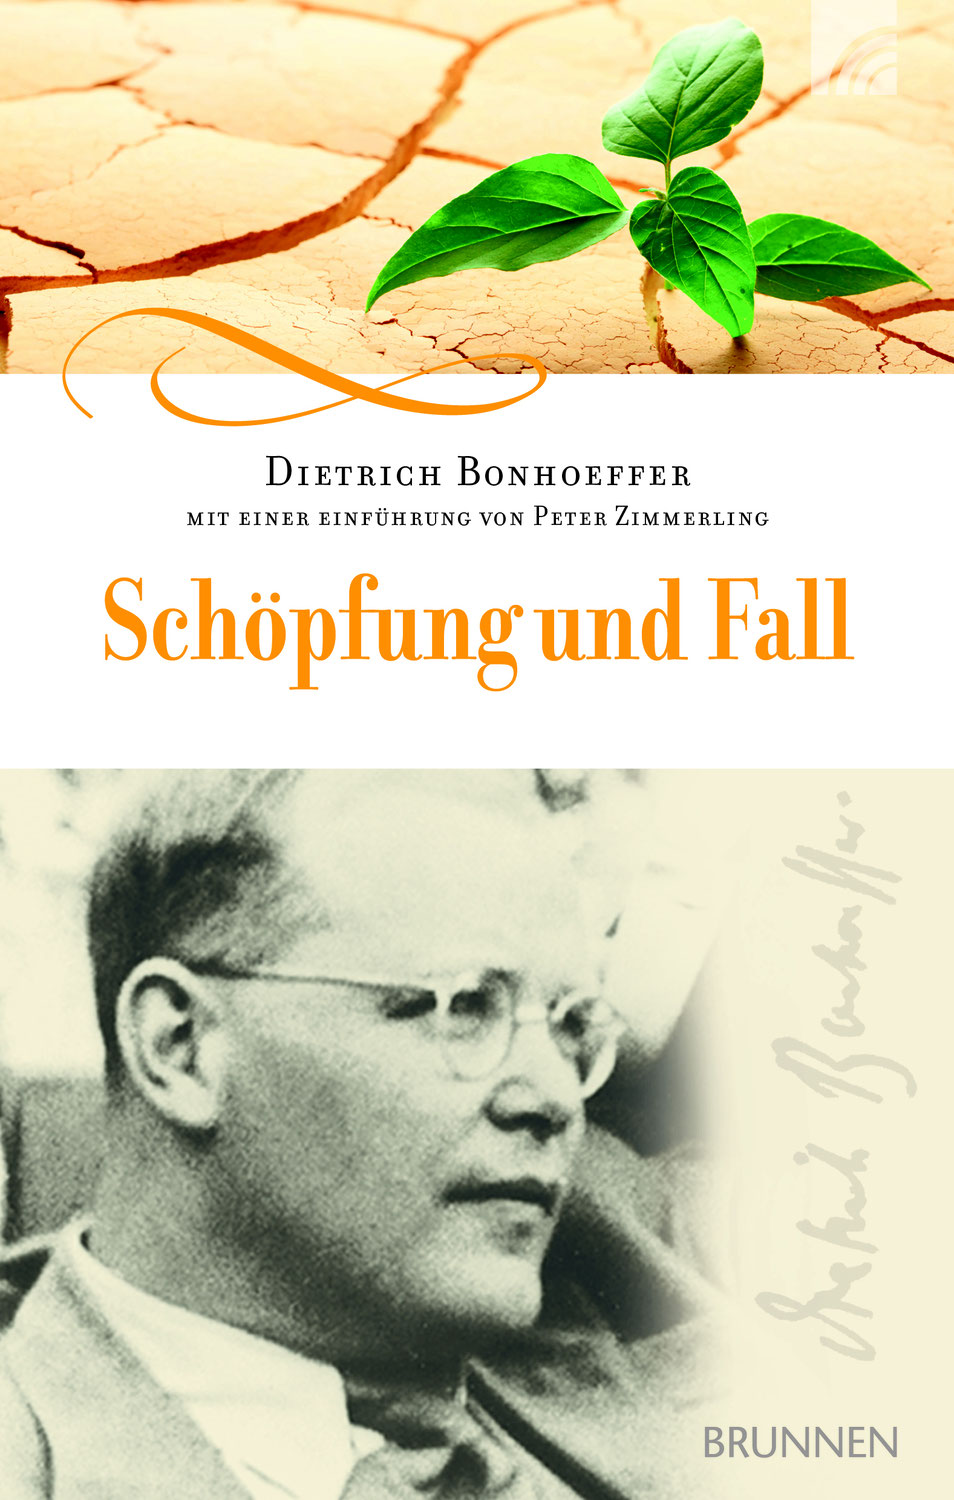 Dietrich Bonhoeffer: Schöpfung und Fall